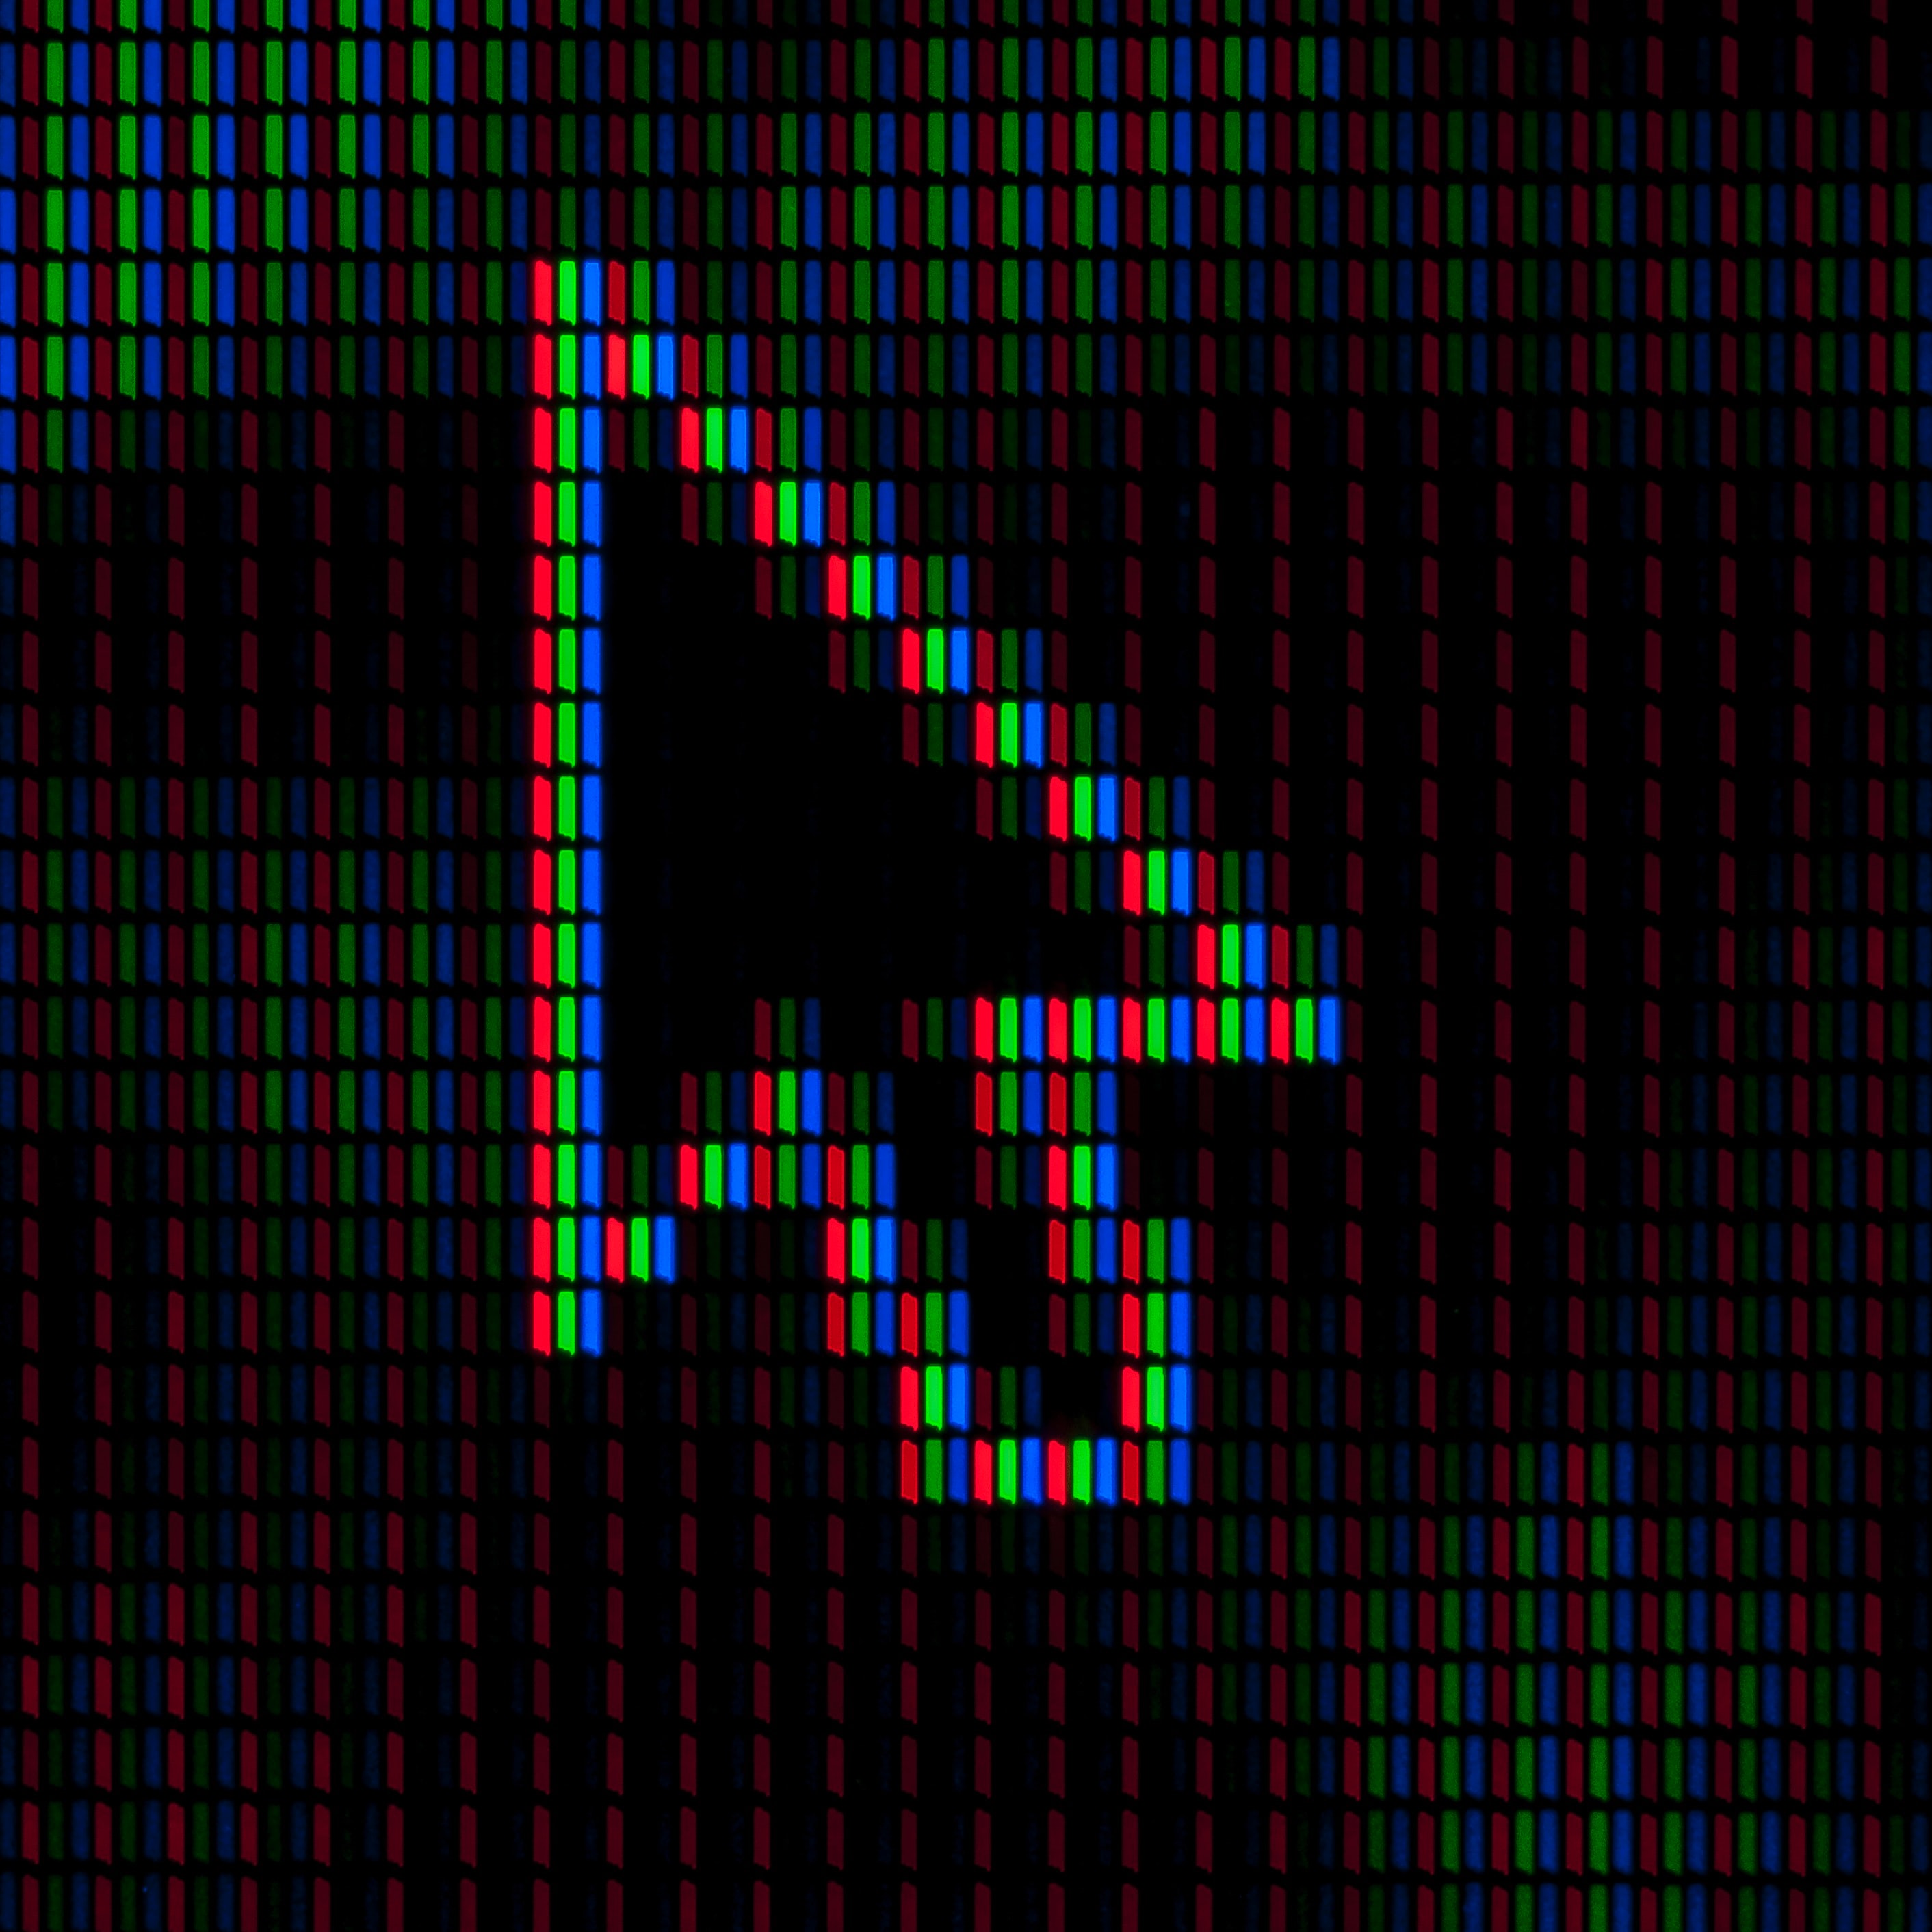 Image représente le curseur d'une souris d'ordinateur sur des néons rouges, verts et bleus